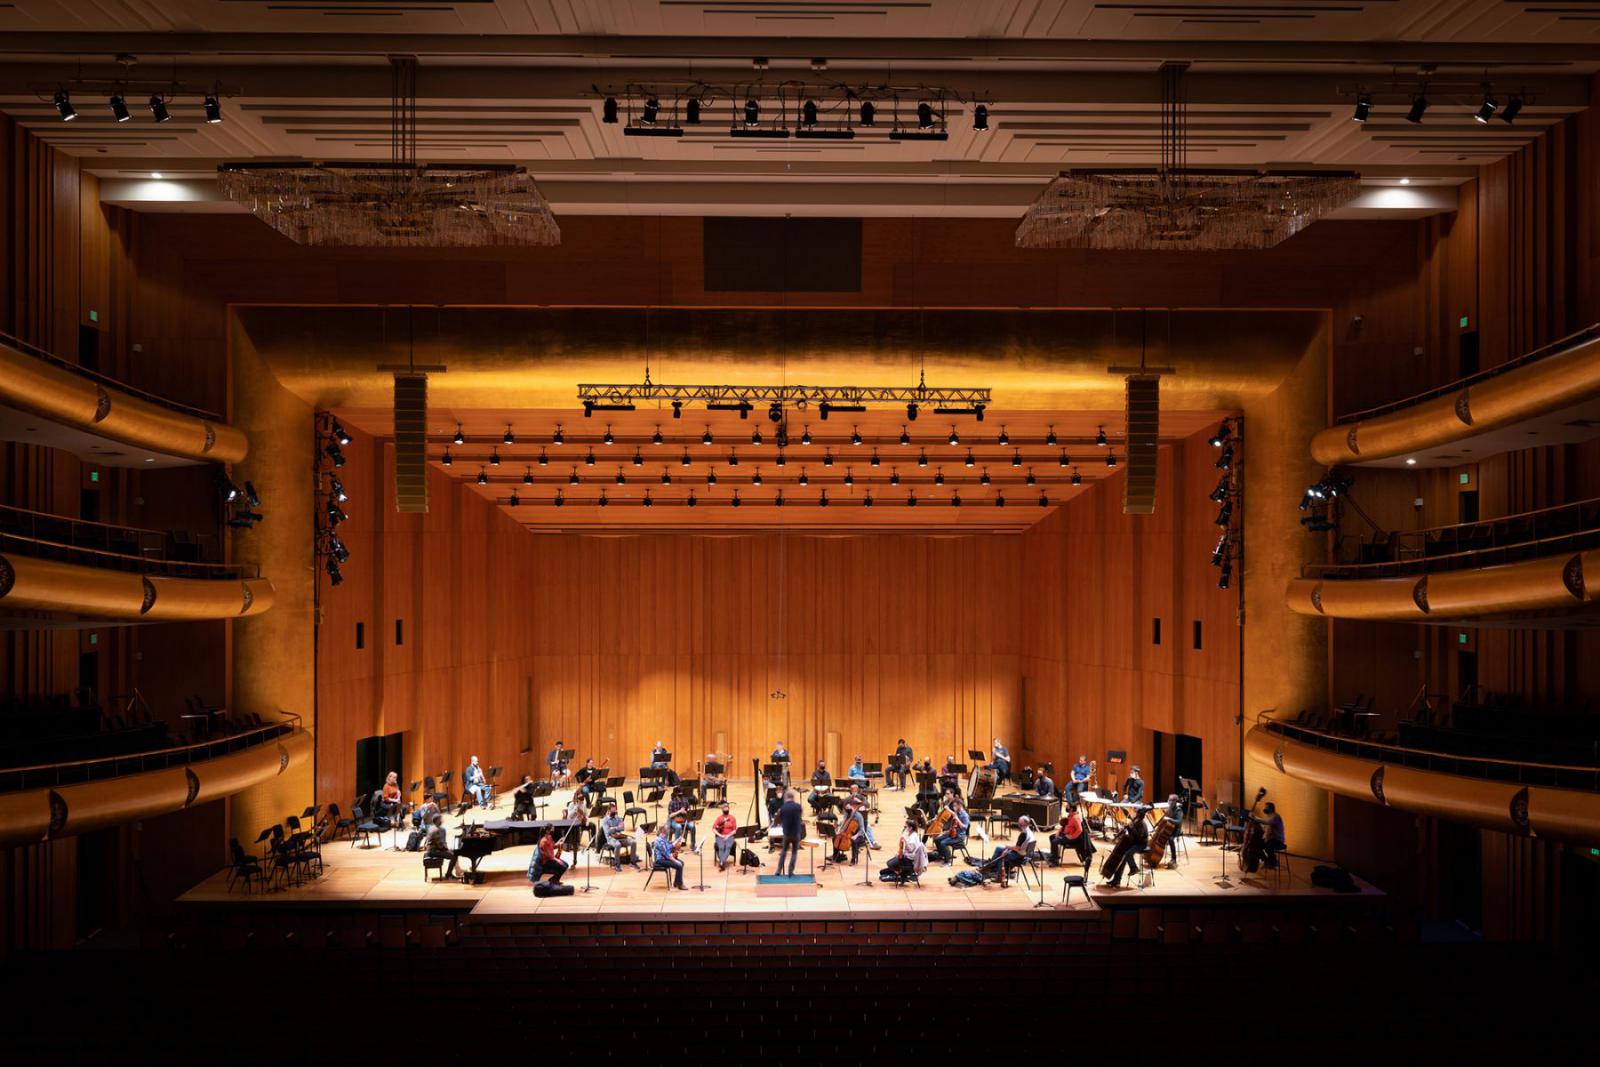 Abravanel Hall is de thuisbasis voor de Utah Symphony